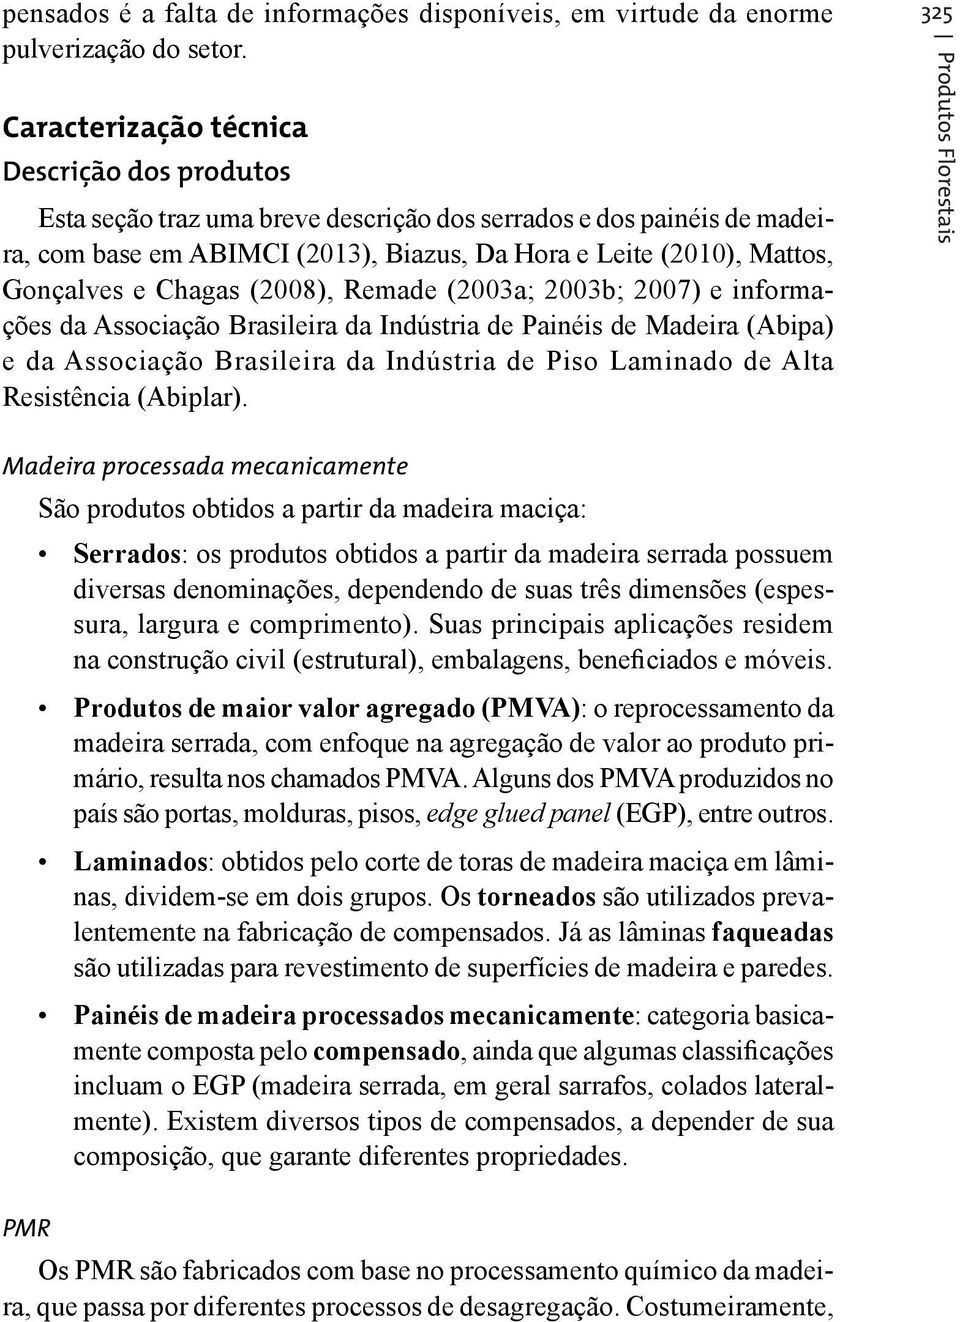 Chagas (), Remade (2003a; 2003b; ) e informações da Associação Brasileira da Indústria de Painéis de Madeira (Abipa) e da Associação Brasileira da Indústria de Piso Laminado de Alta Resistência